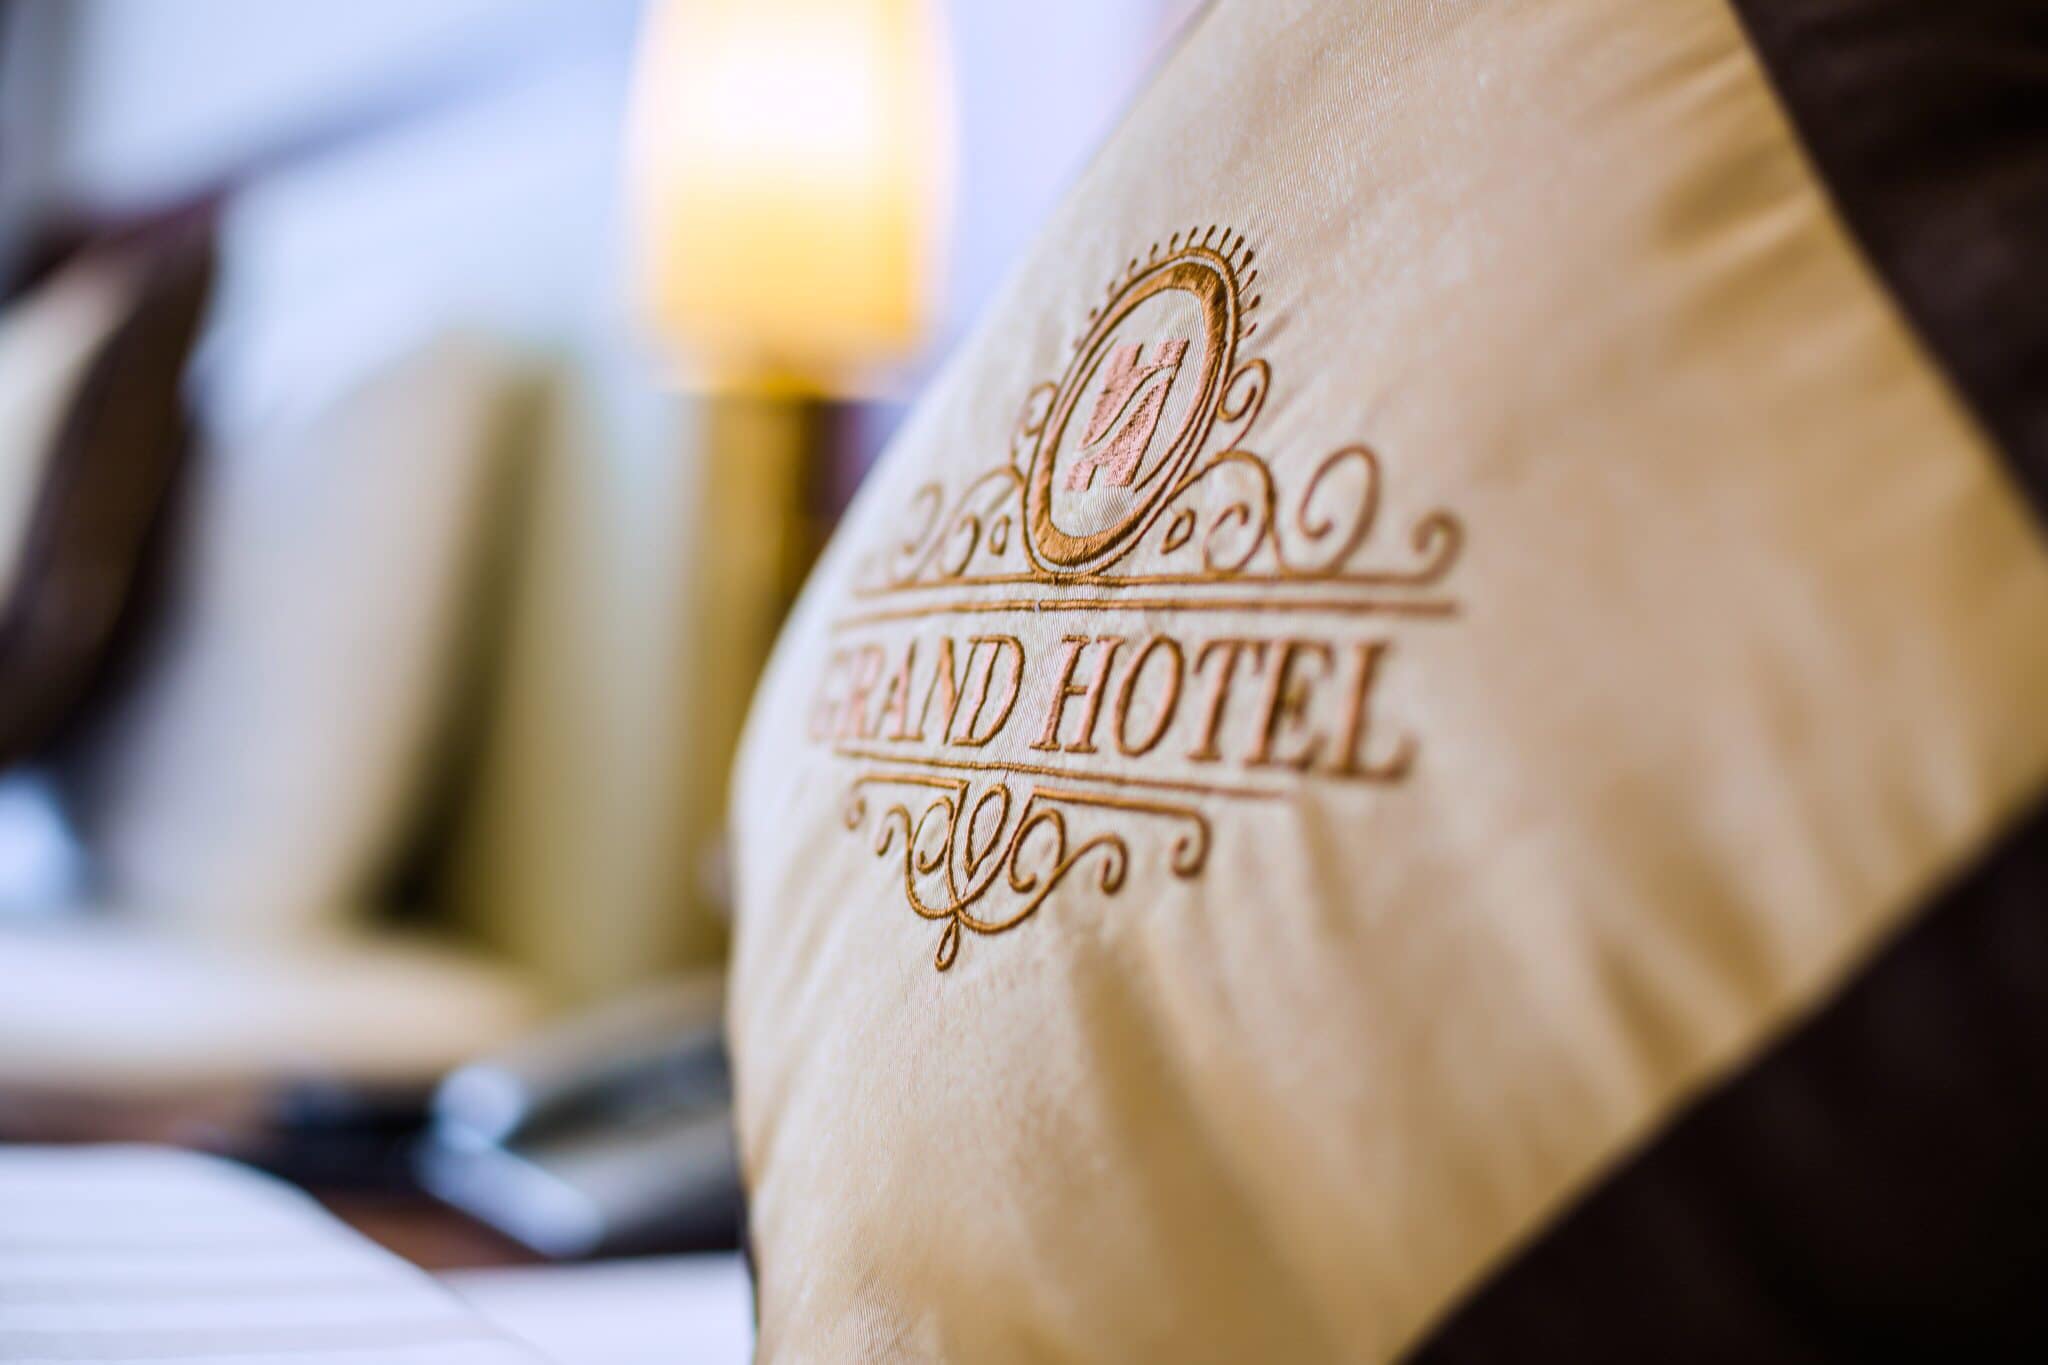  hãy cùng gia đình đến Grand Hotel hưởng thụ một kỳ nghỉ cho riêng mình